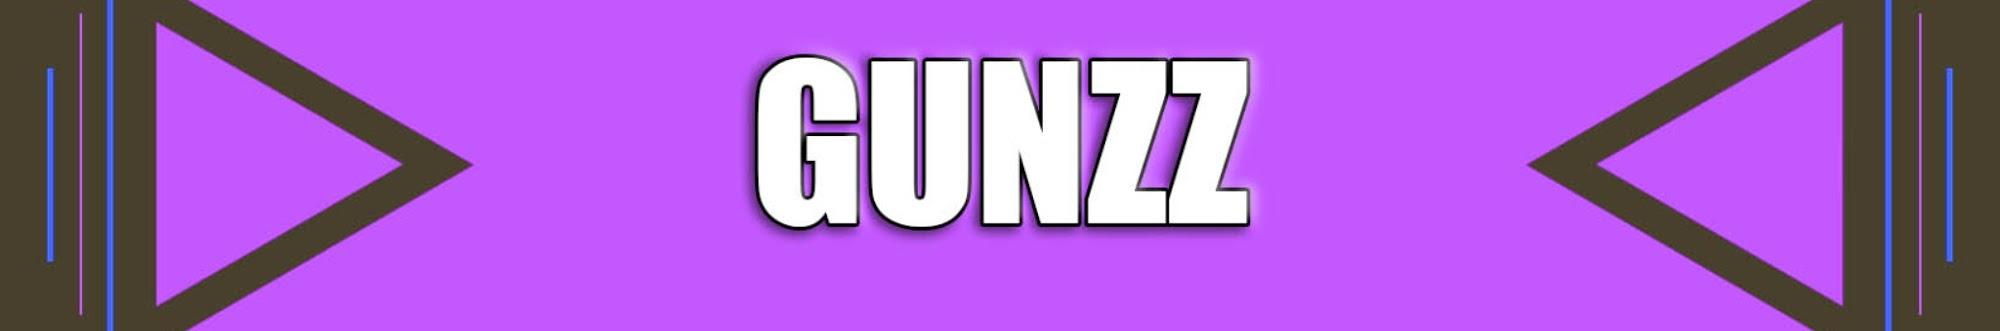 Gunzz